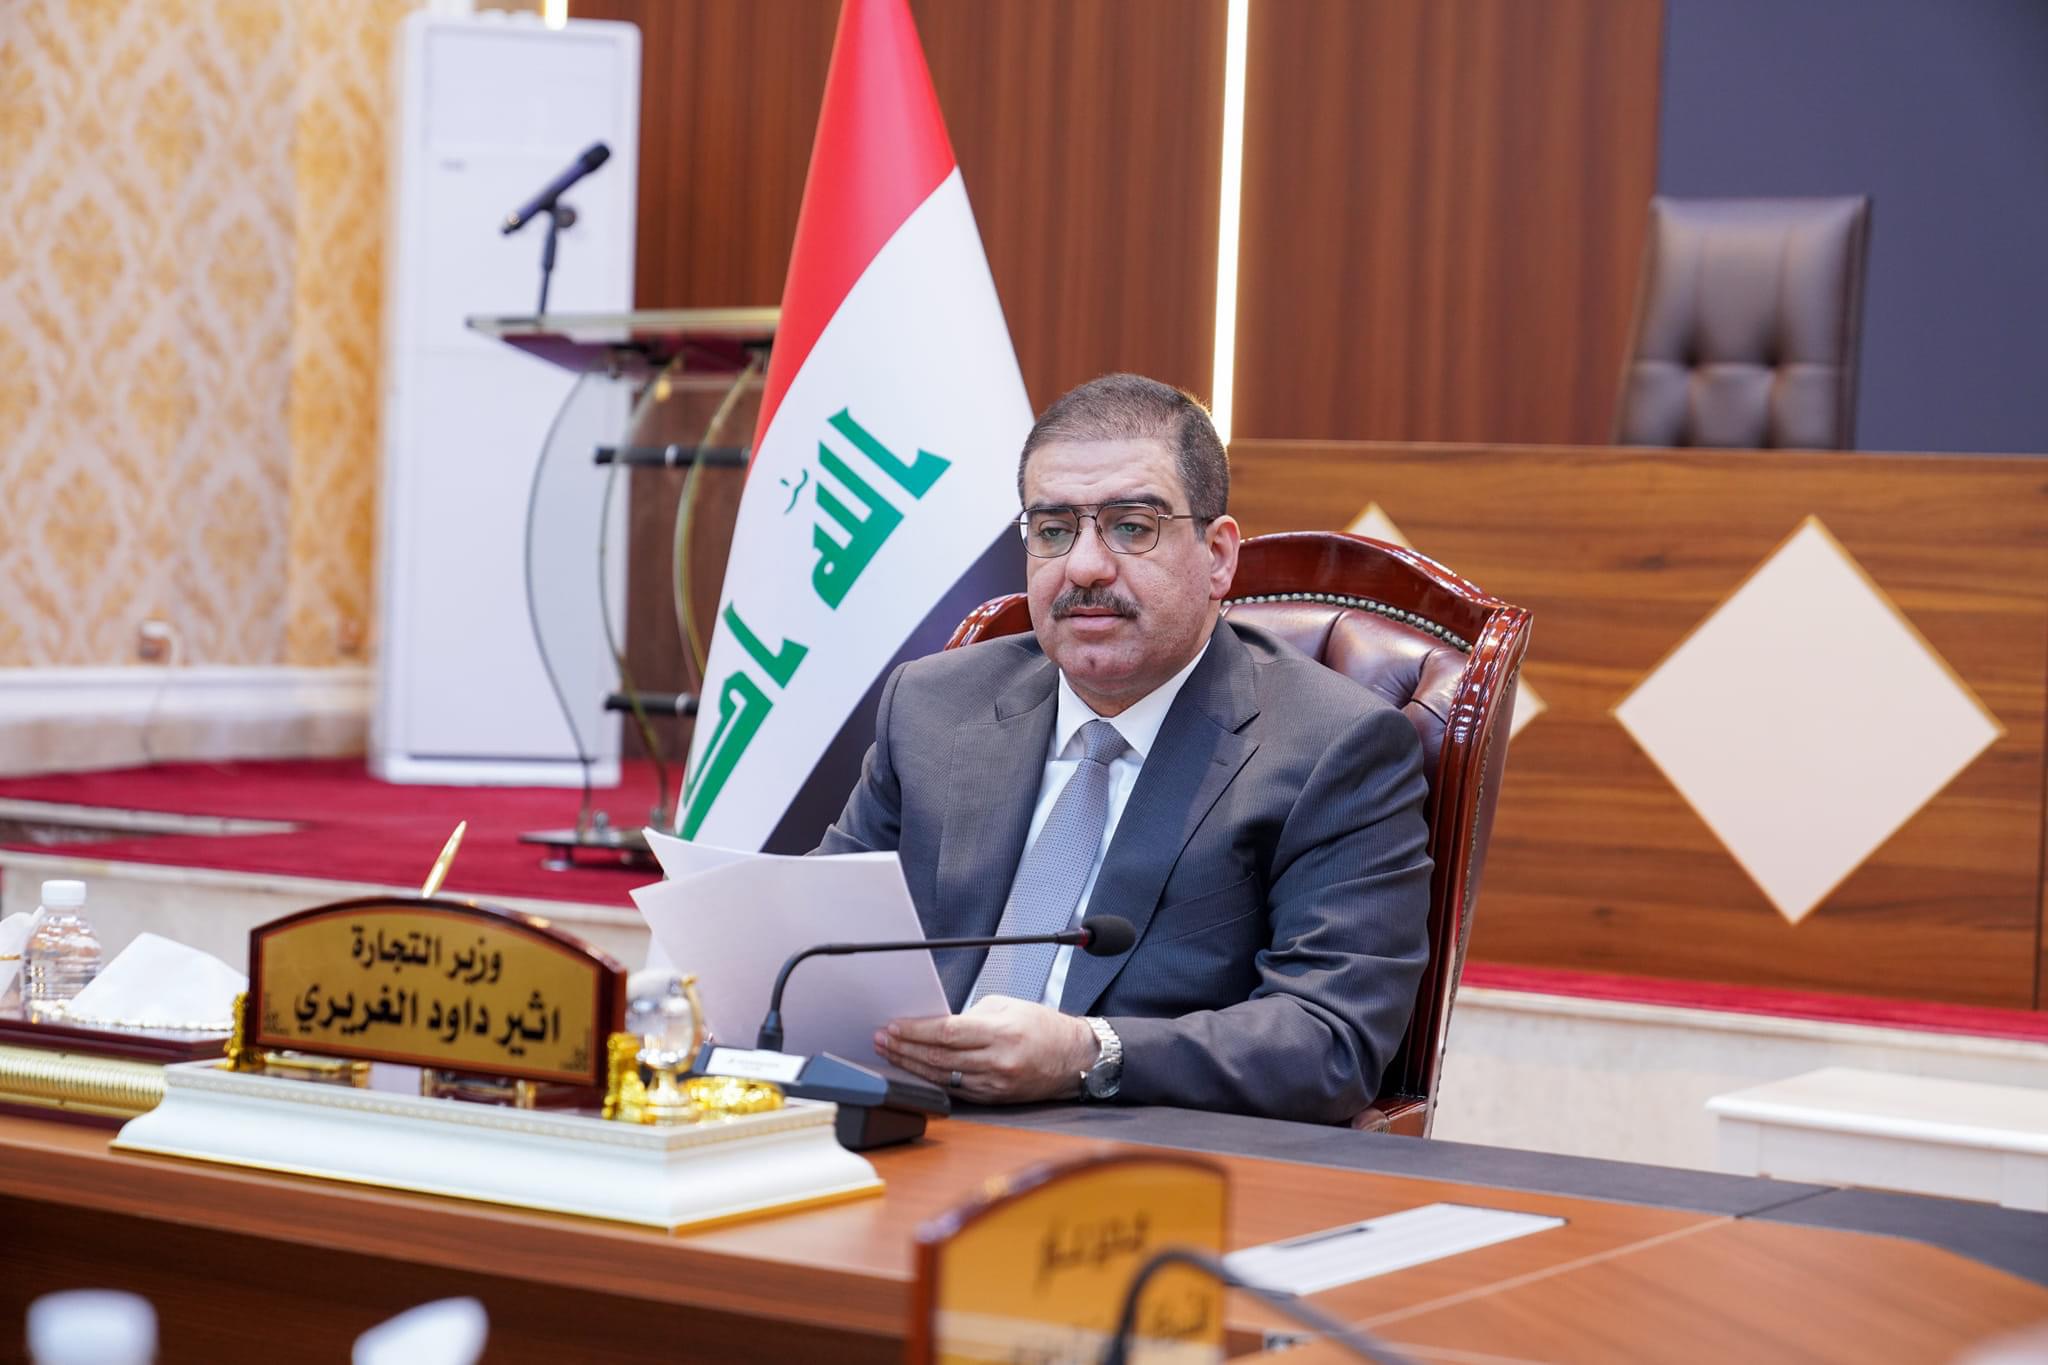 وزير التجارة مهنئاً العراقيين برأس السنة الجديدة: نجحنا بتأمين الامن الغذاتي وتجاوز تحديات كبيرة 